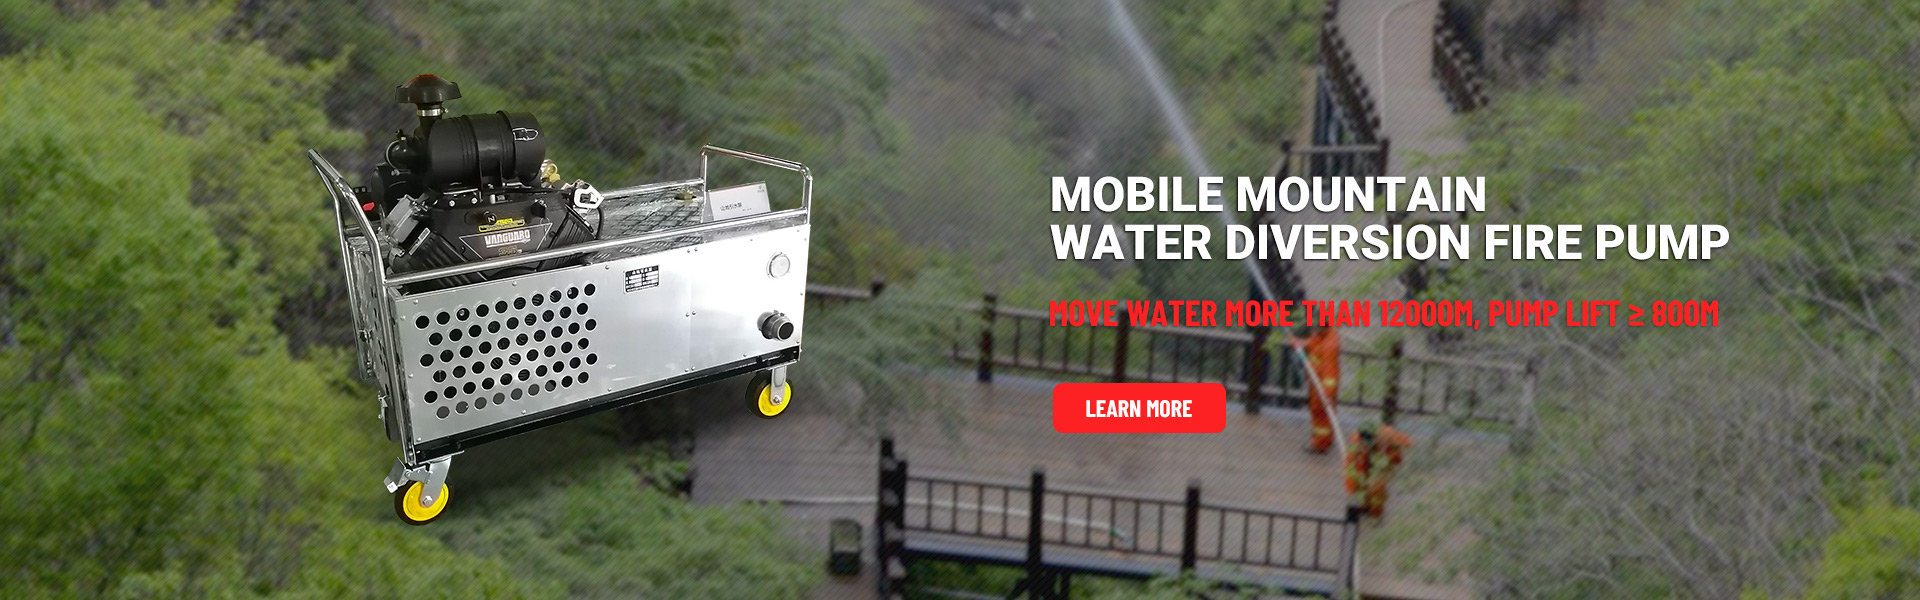 Mobil brandpump för vattenavledning